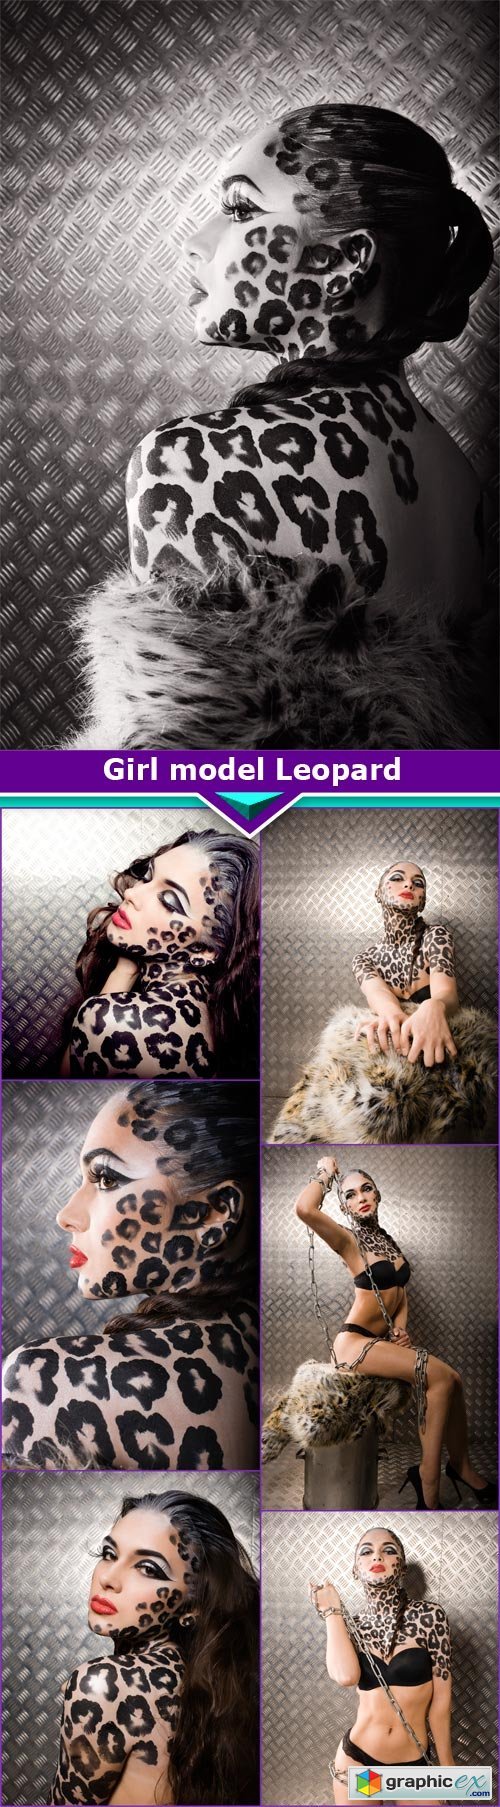 Girl model Leopard 7x JPEG